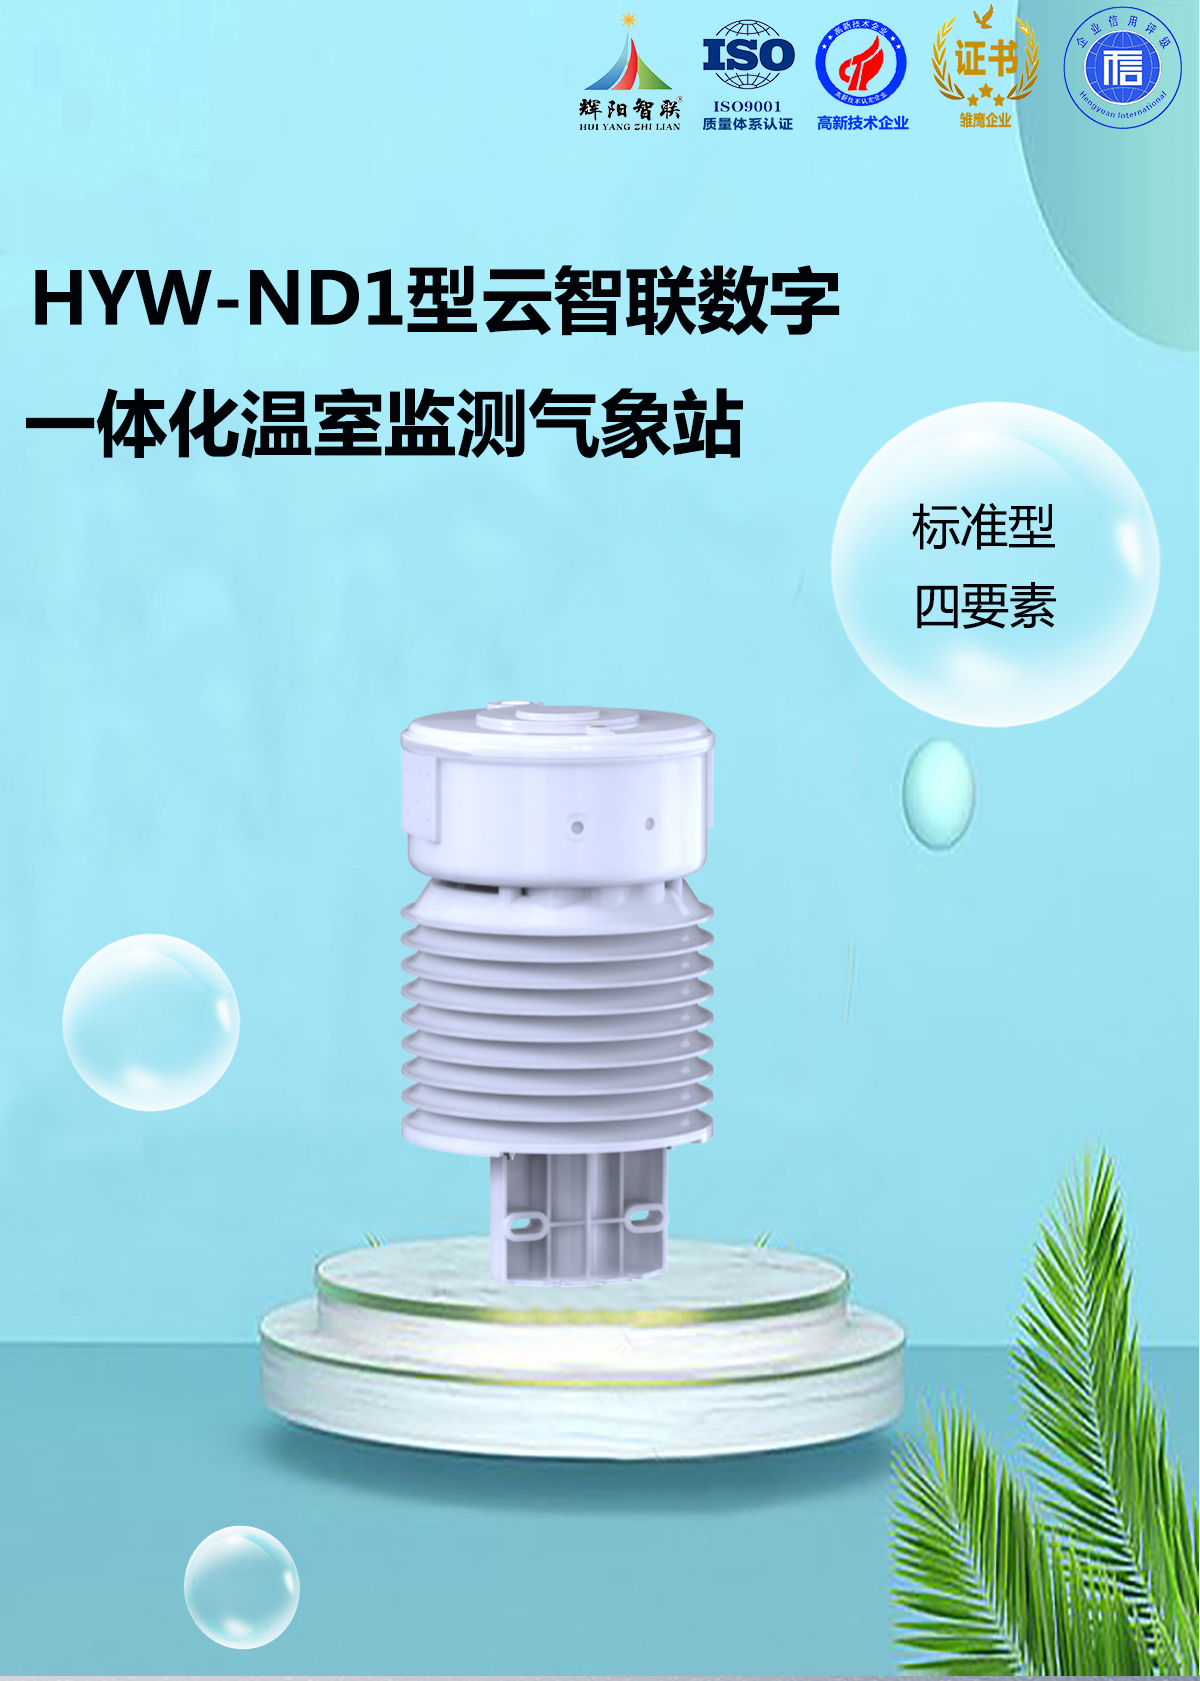 HYW-ND1型一体化温室监测气象站